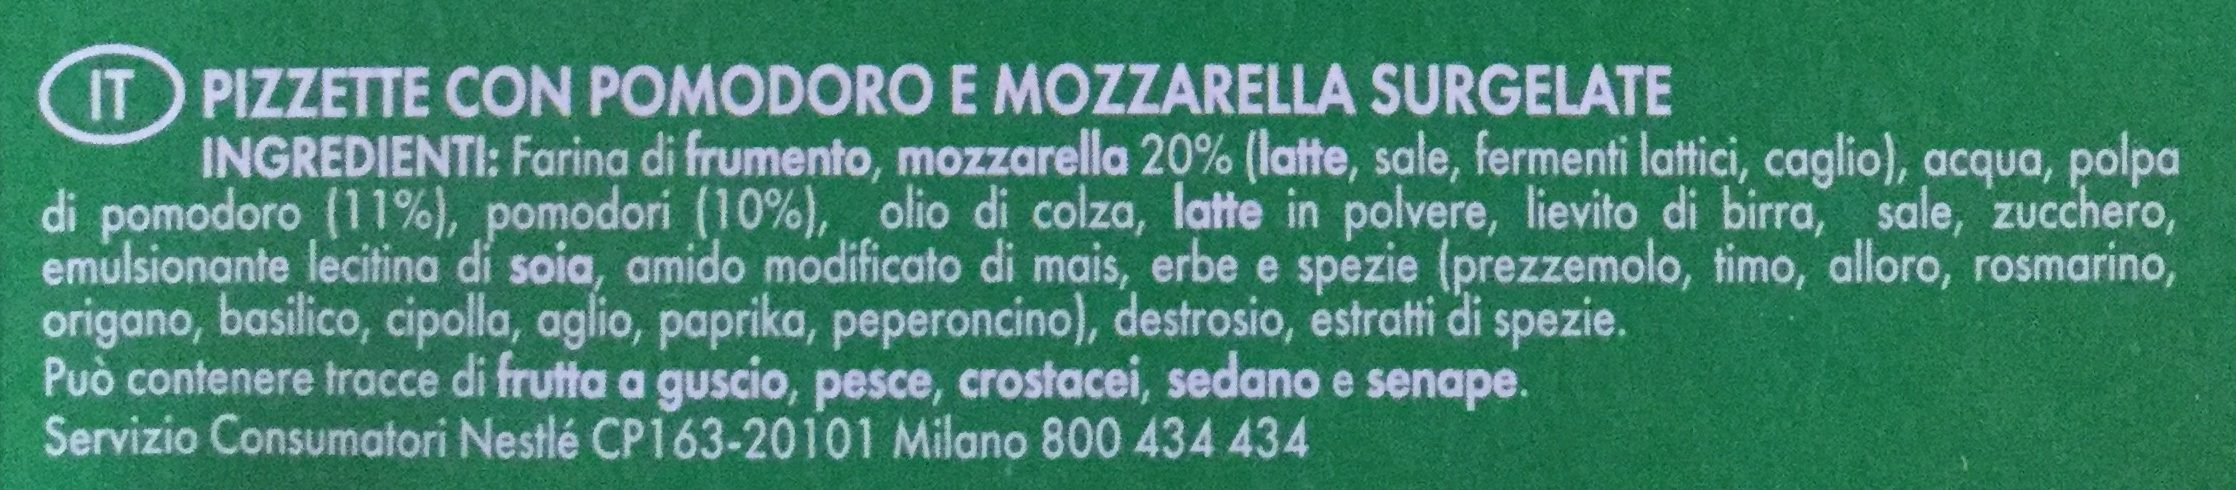 mini-pizzas surgelées Tomate Mozzarella - Ingredienti